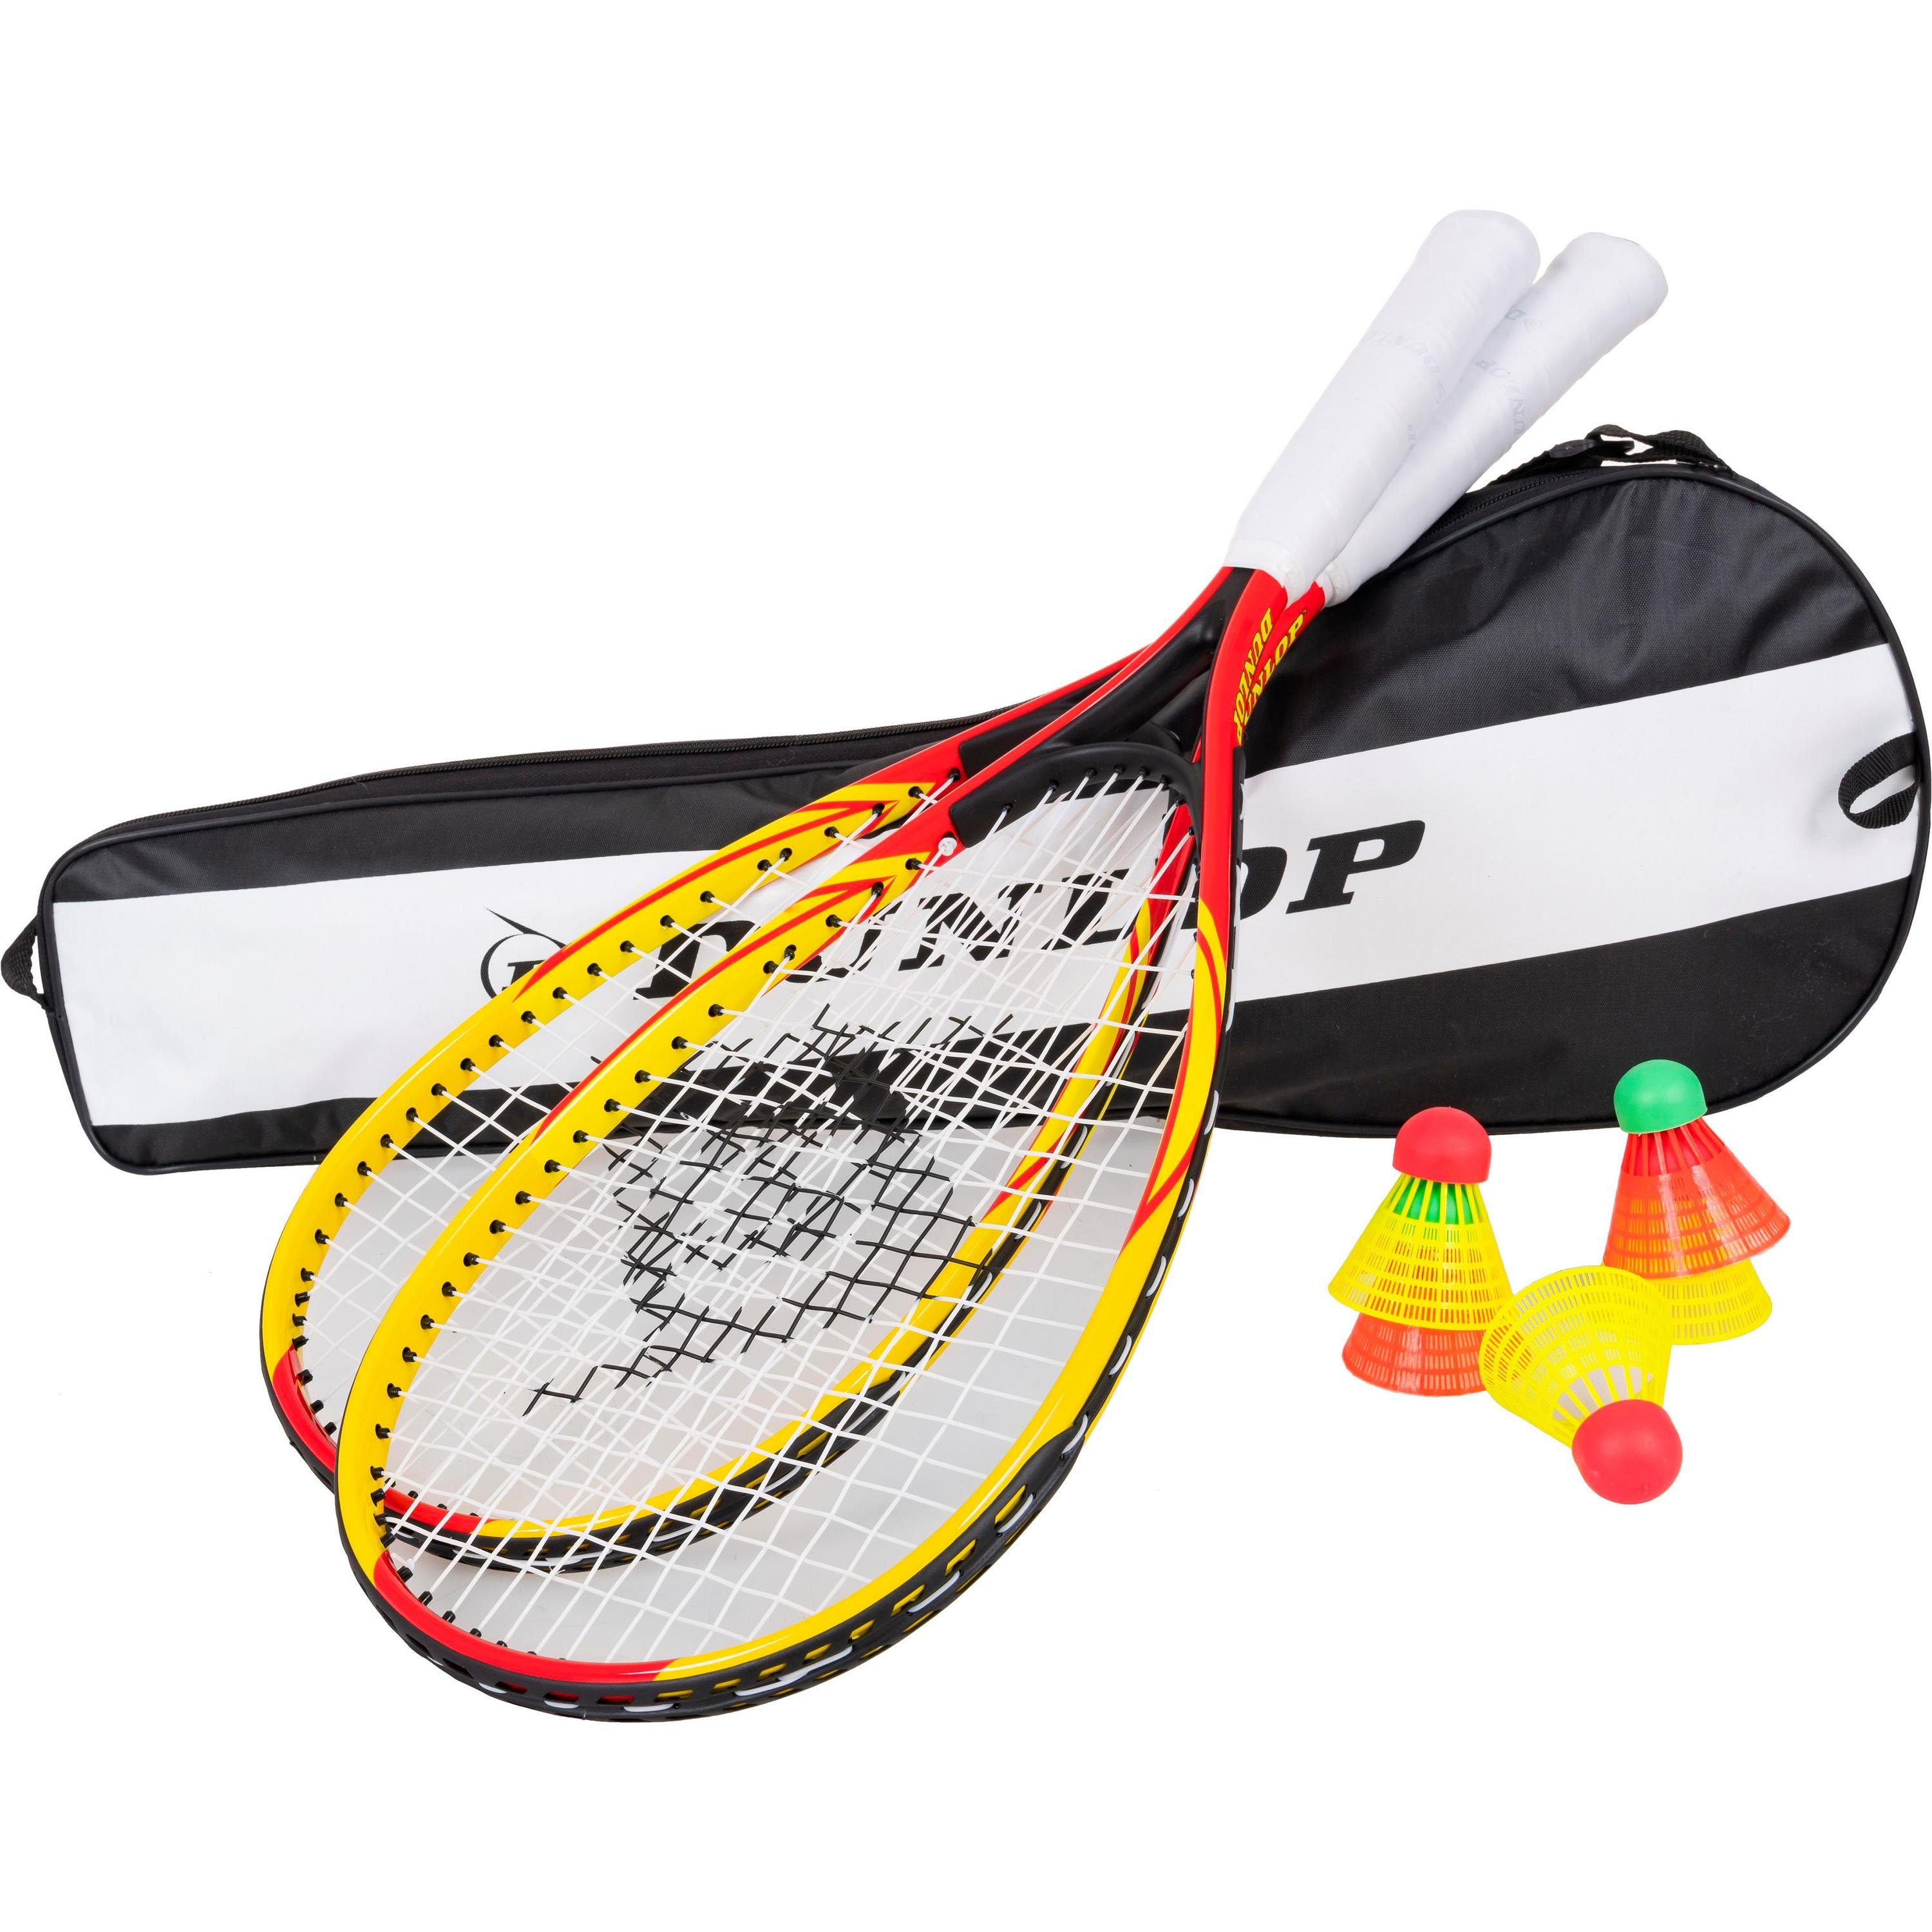 RACKETBALL SET Dunlop Badmintonschläger